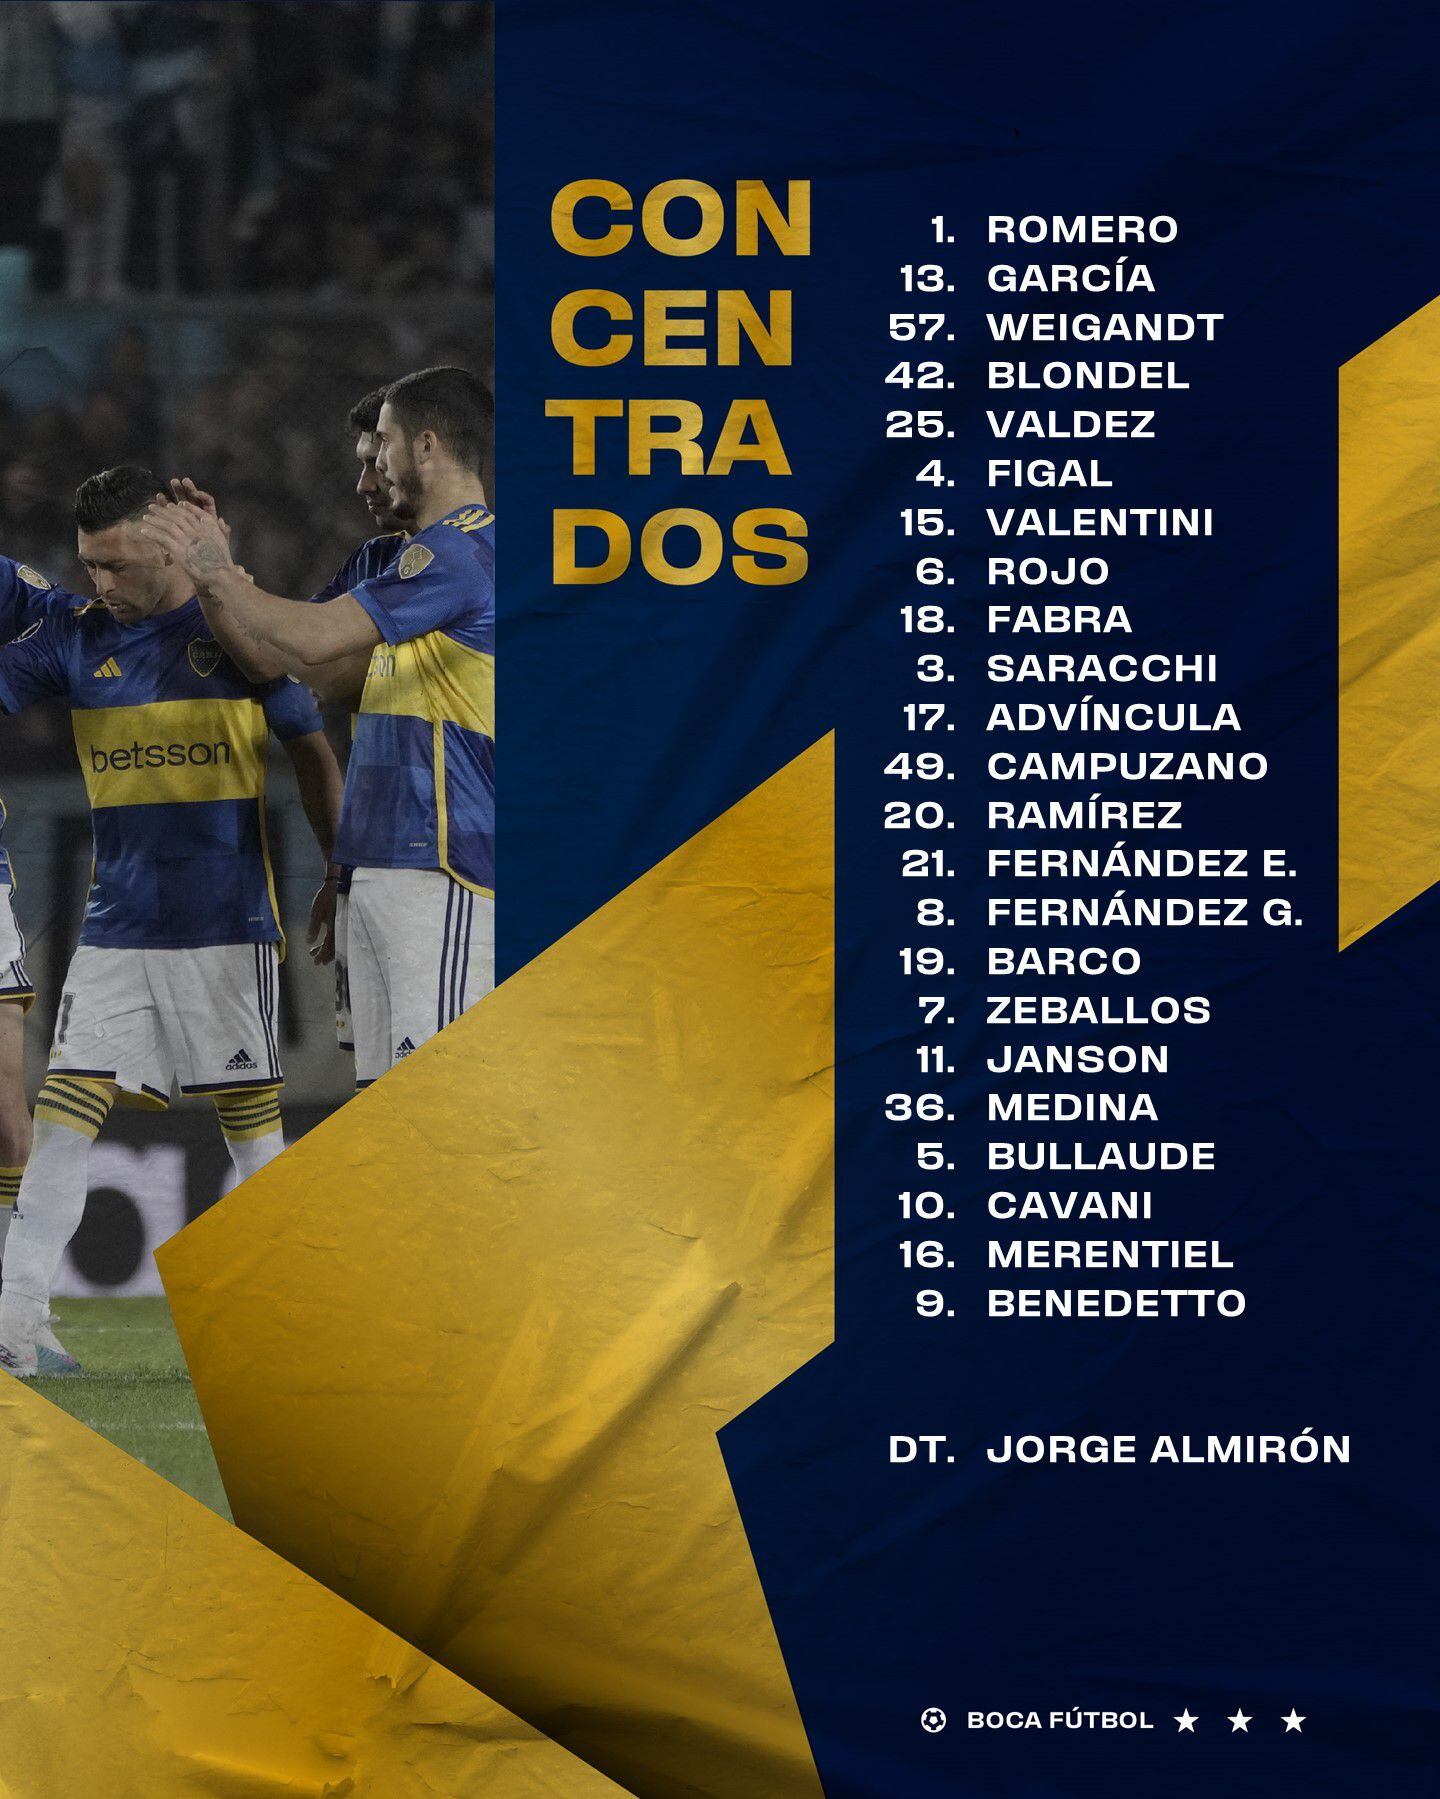 La lista de convocados de Boca Juniors, con Luis Advíncula, para enfrentar a Palmeiras por Copa Libertadores.